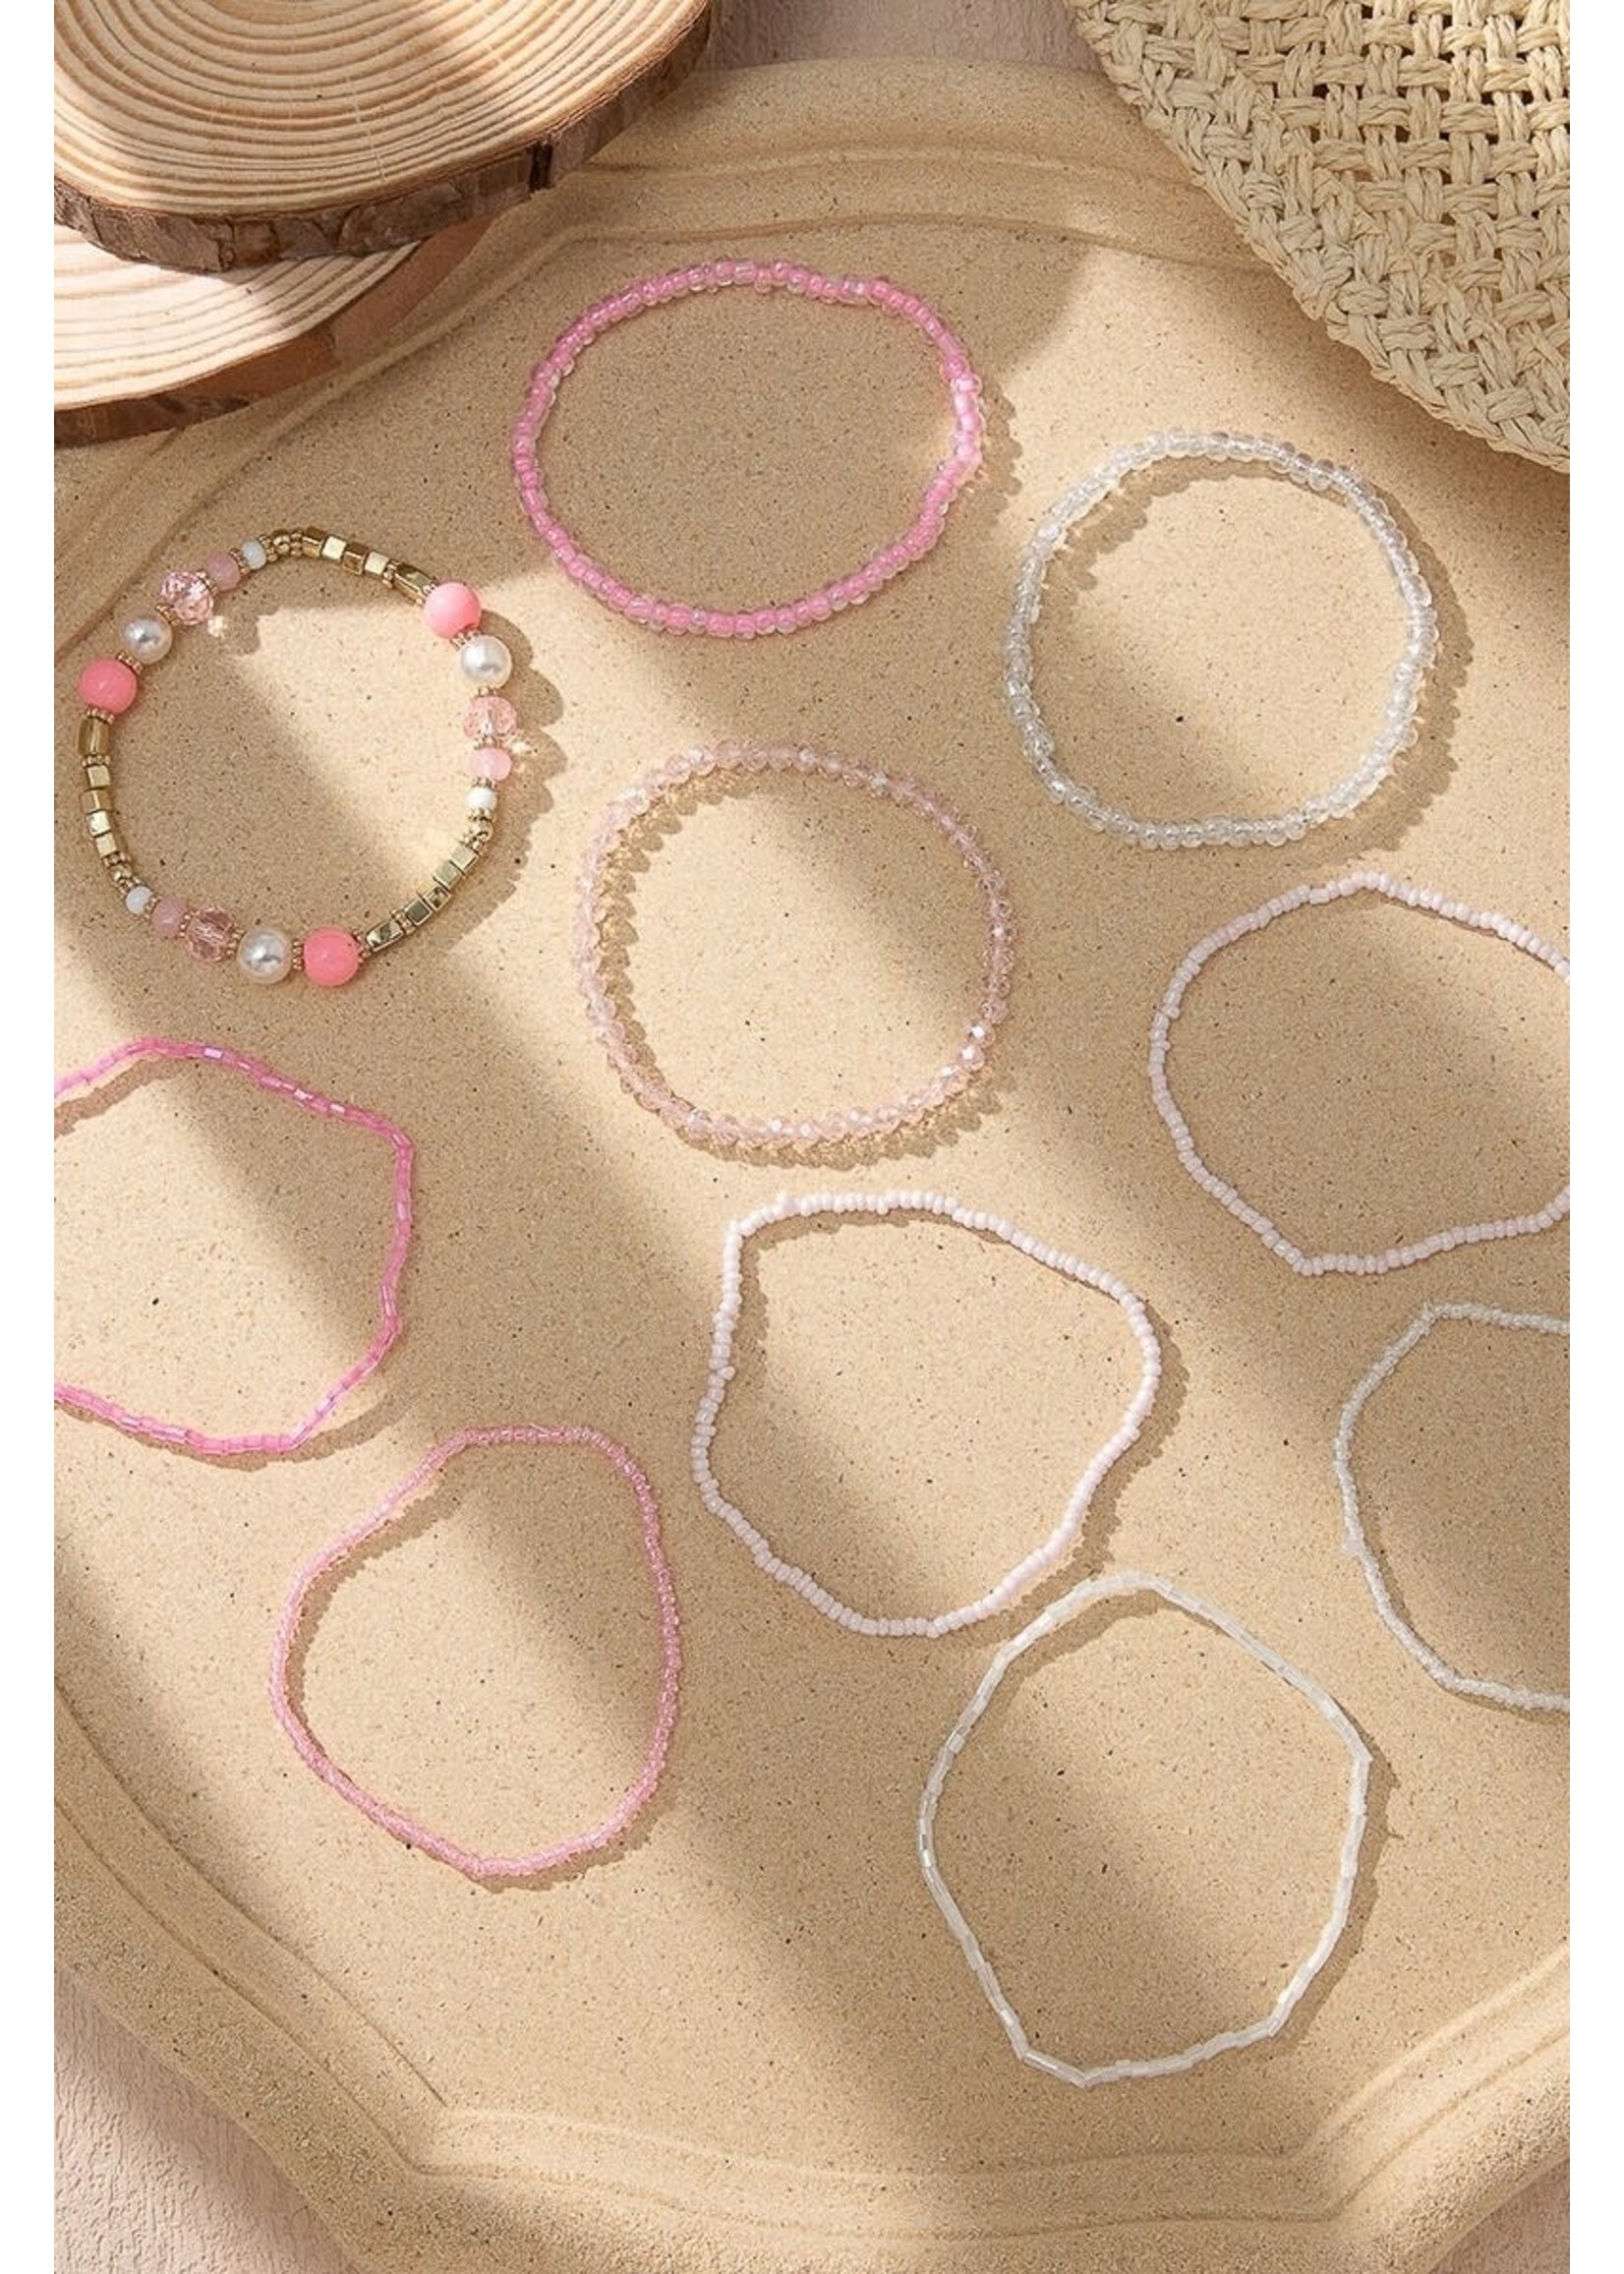 10pcs Pearl Beaded Bracelet Set